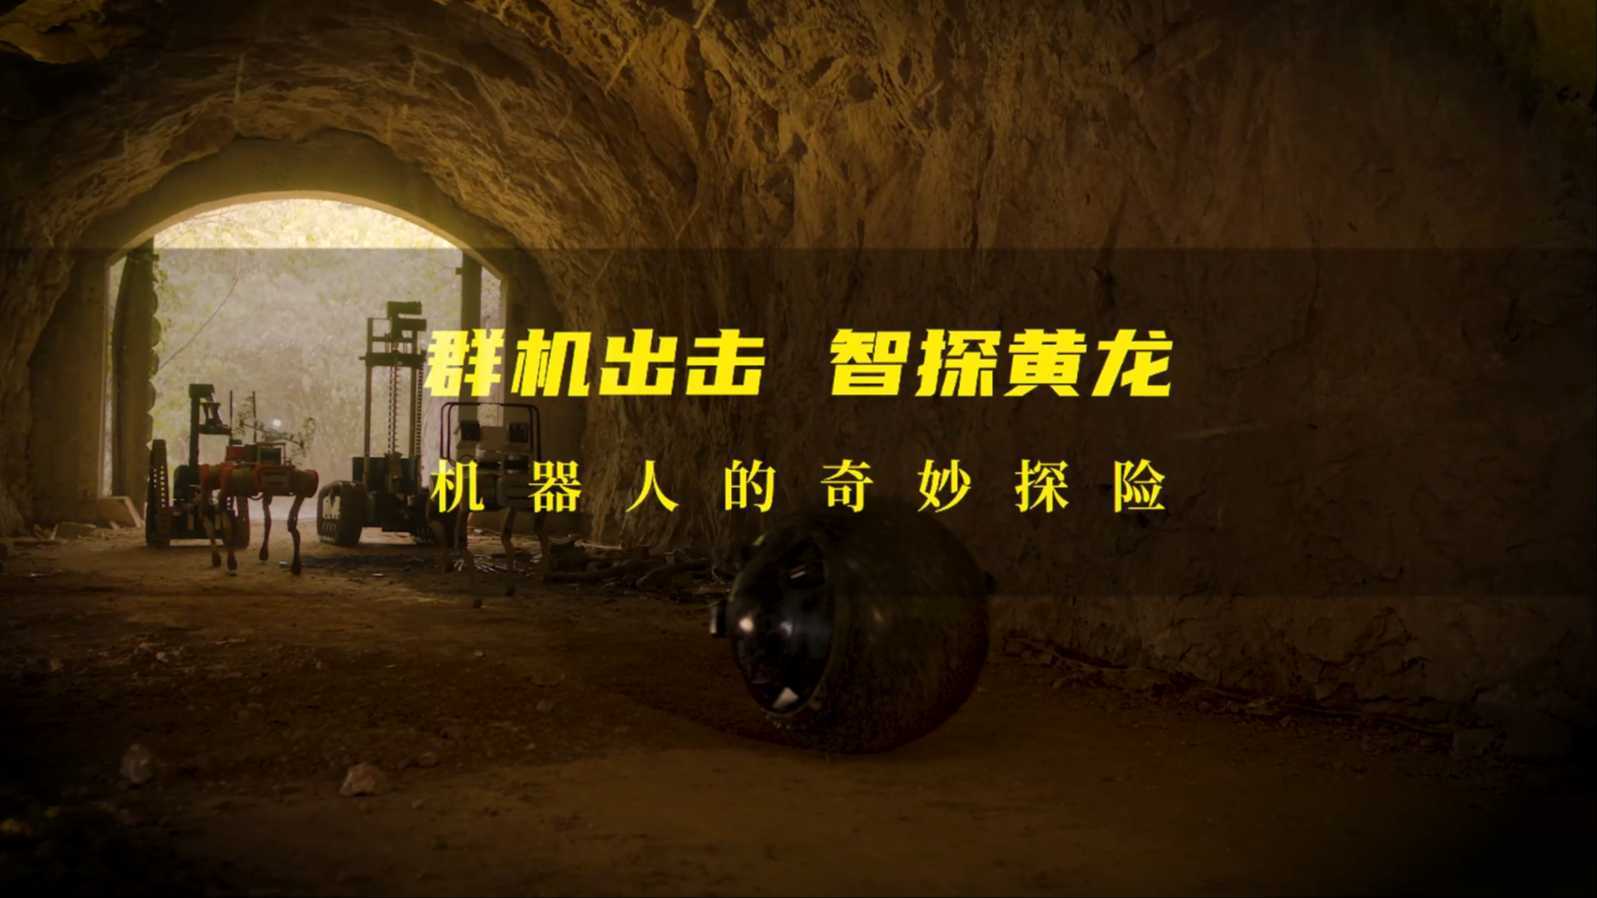 《群机出击 智探黄龙》| 浙大湖州研究院机器人 创意广告